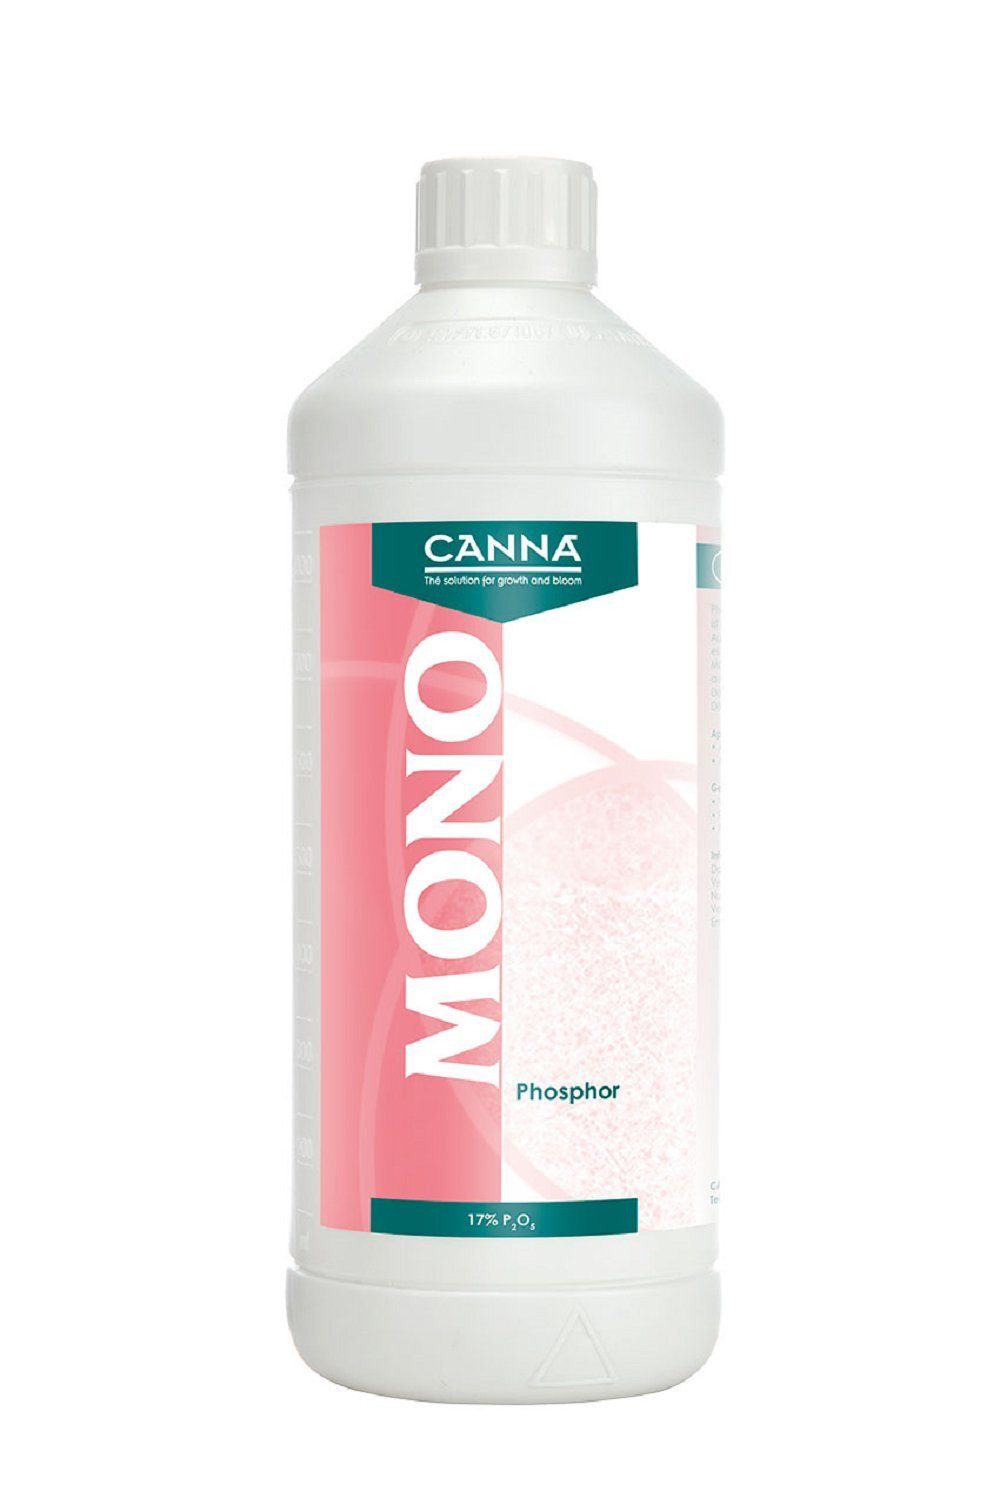 Canna Spezialdünger Mono Phosphor, 1 Liter